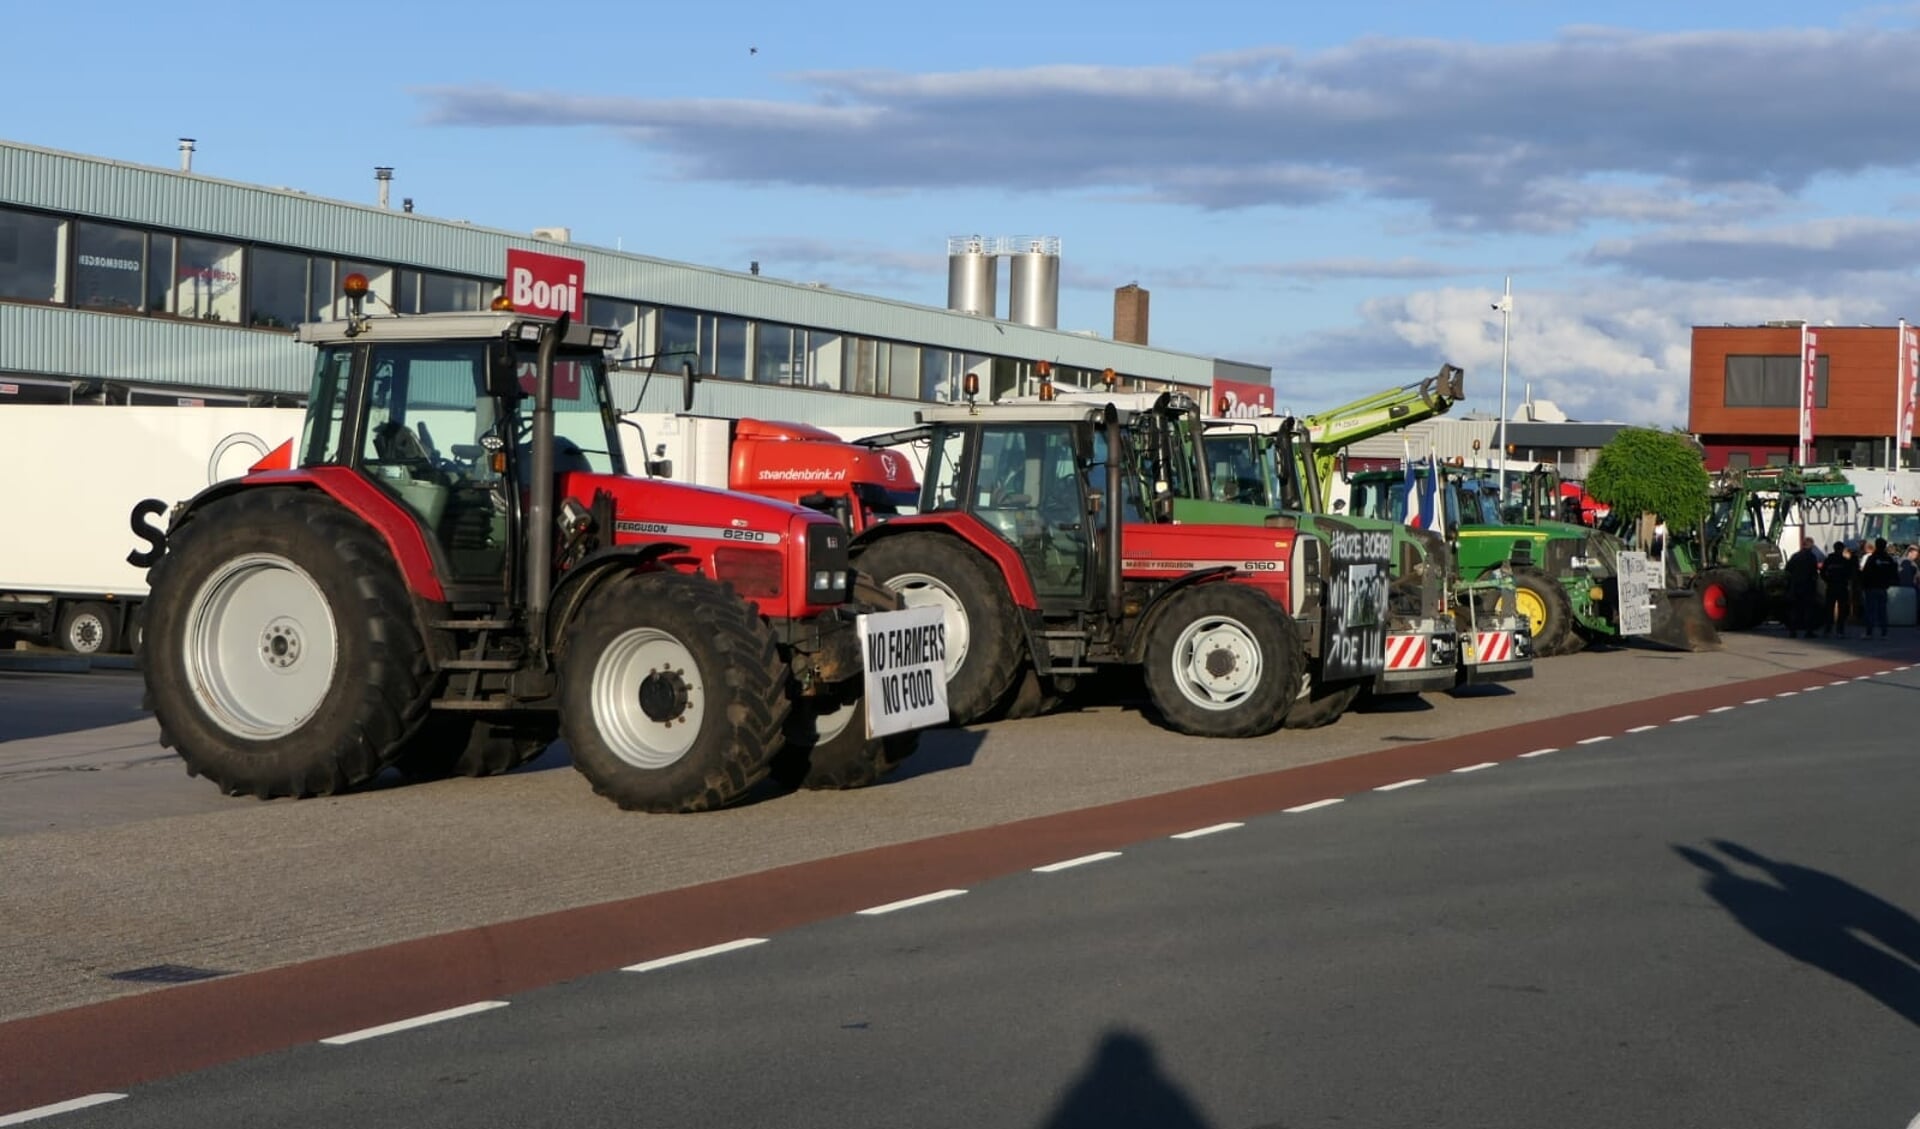 Het afgelopen jaar werd er regelmatig door boeren, ook hier uit de regio, geprotesteerd tegen de stikstofmaatregelen. 